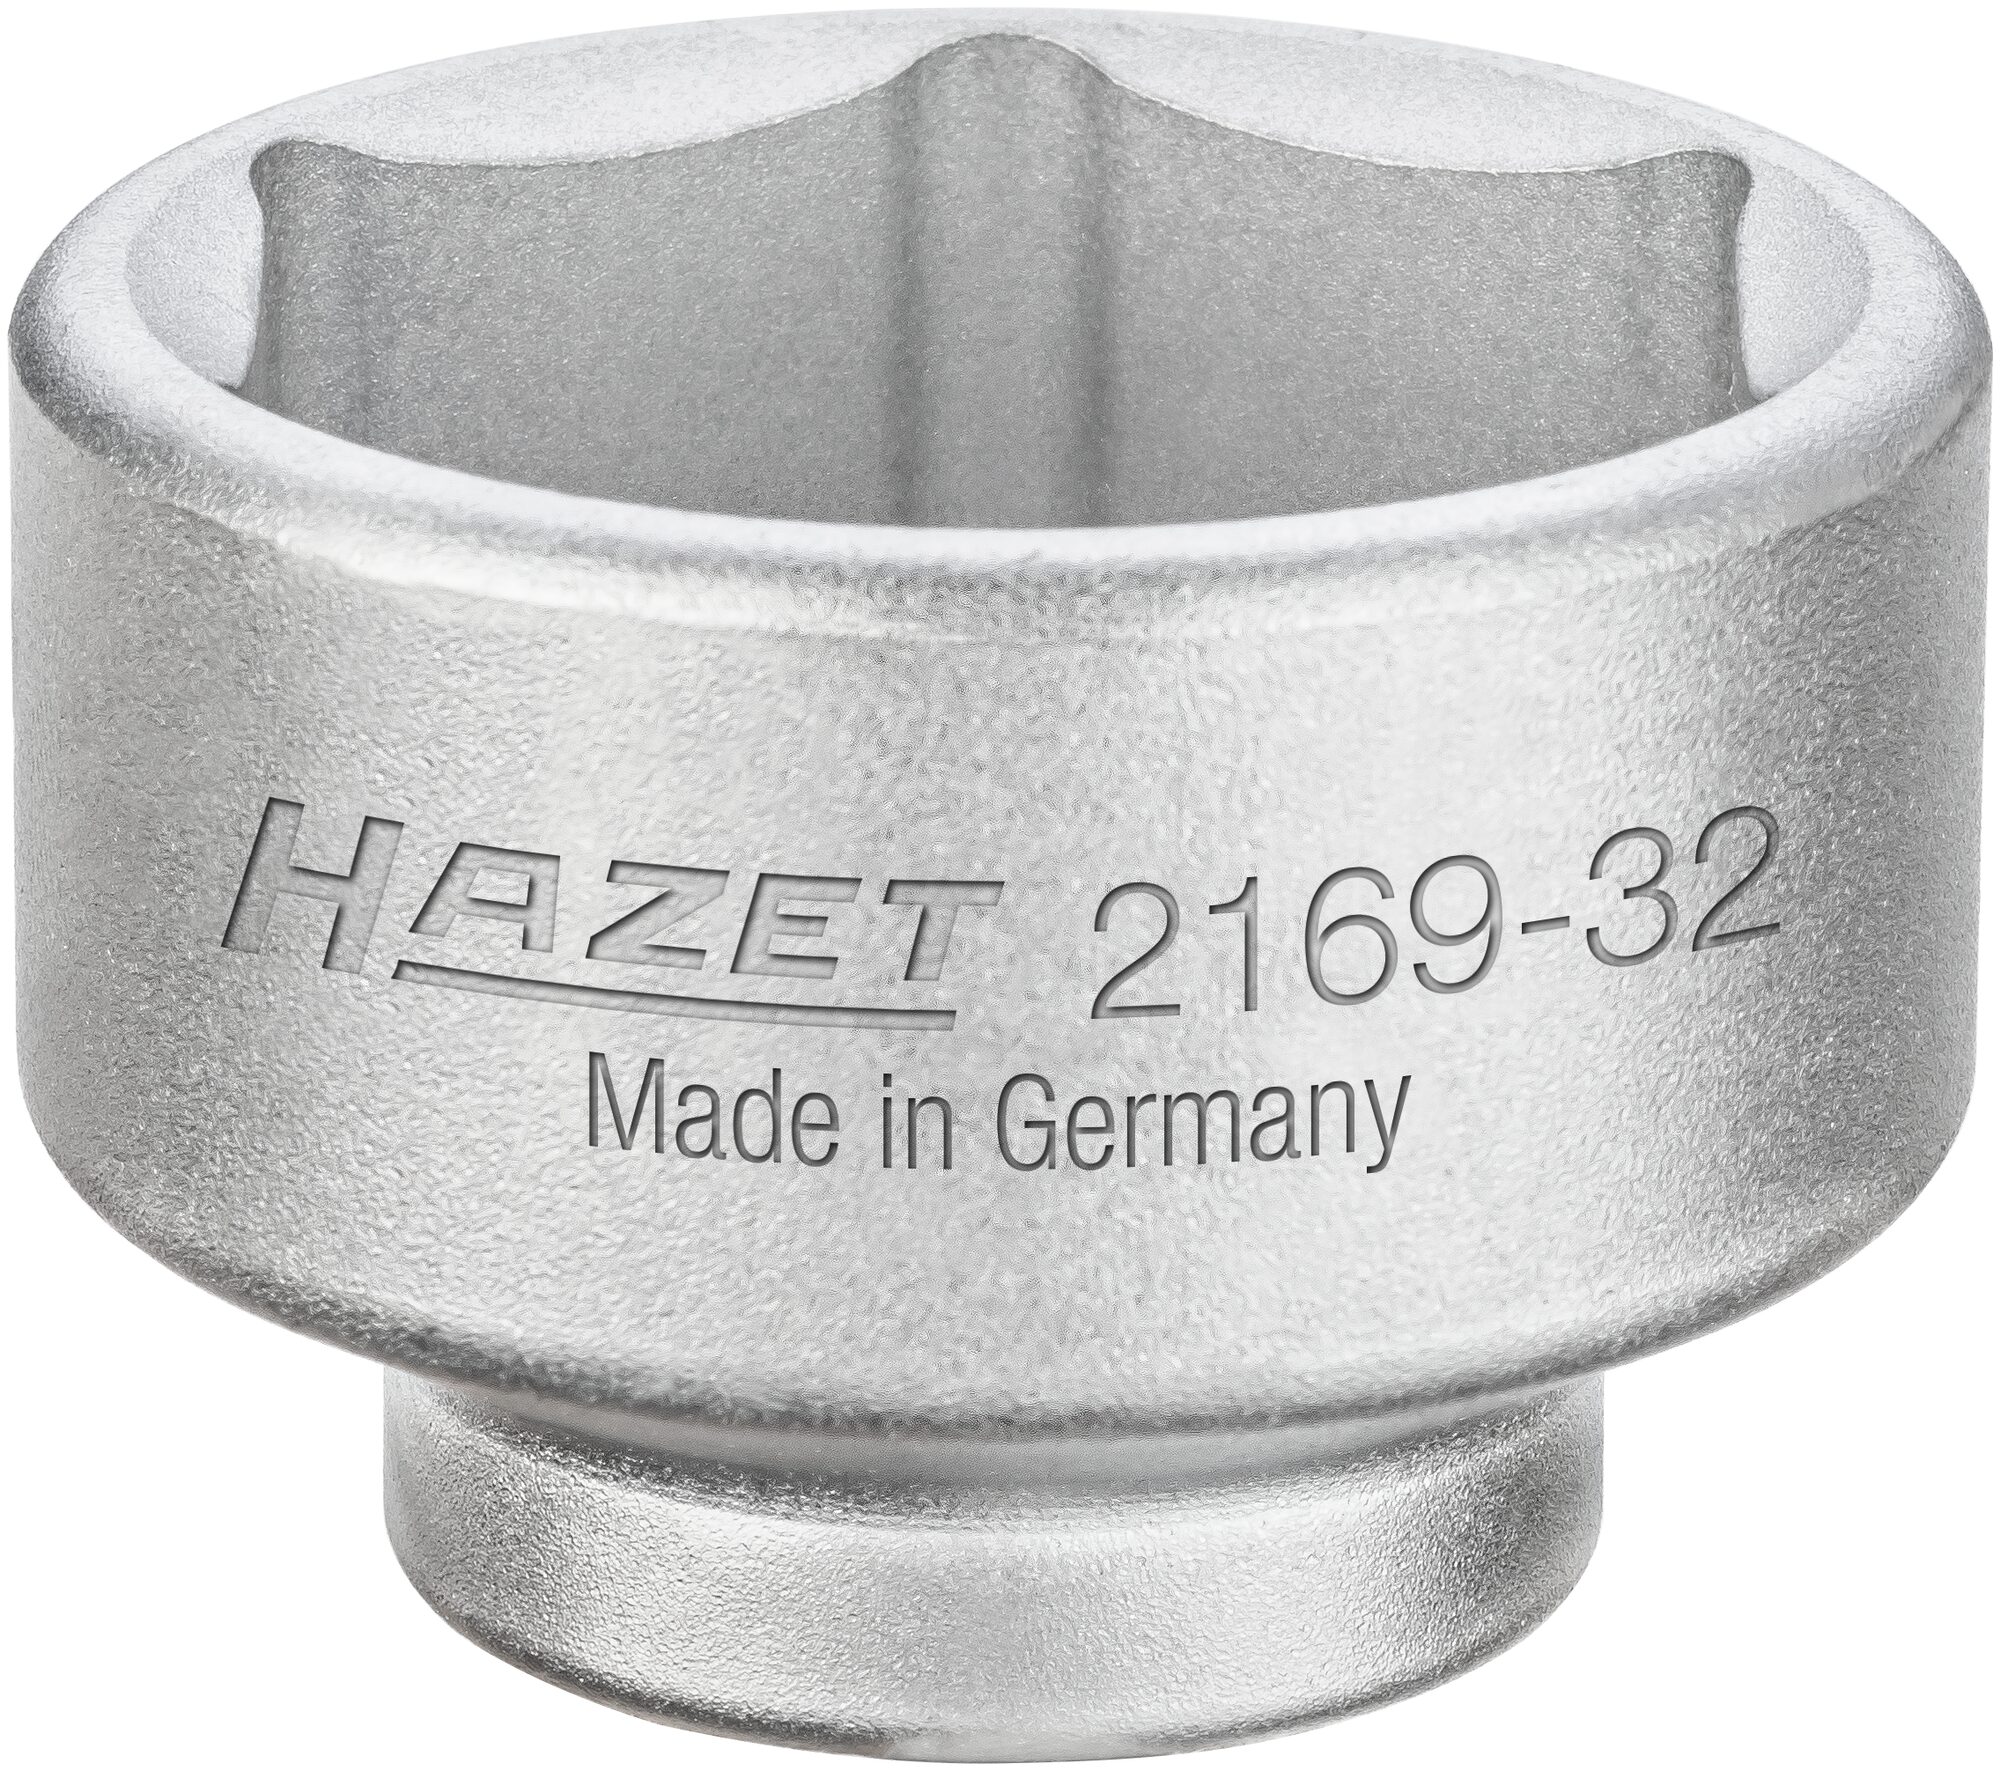 HAZET Ölfilter-Schlüssel 2169-36 · Vierkant hohl 10 mm (3/8 Zoll